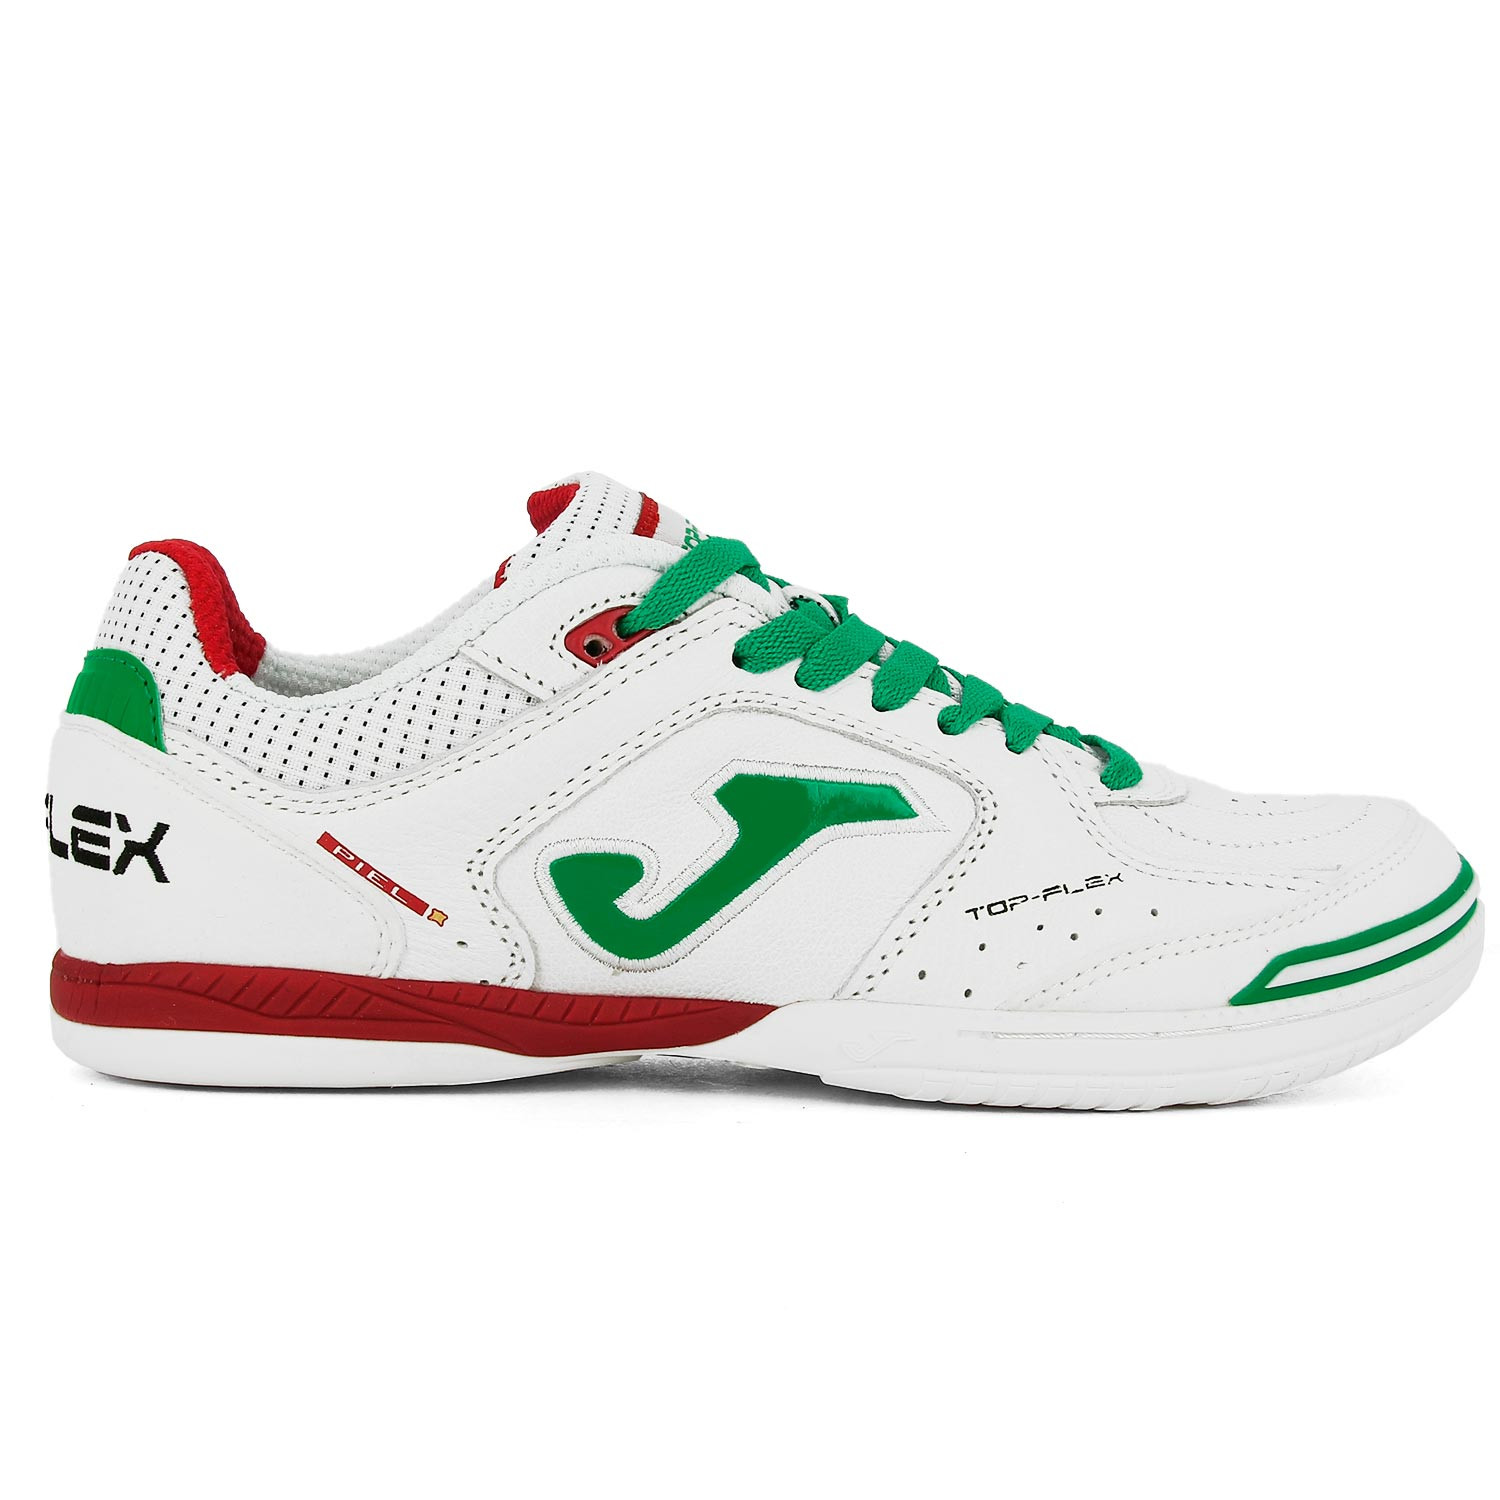 Zapatillas de futsal Joma Top IN blancas y verdes | futbolmania